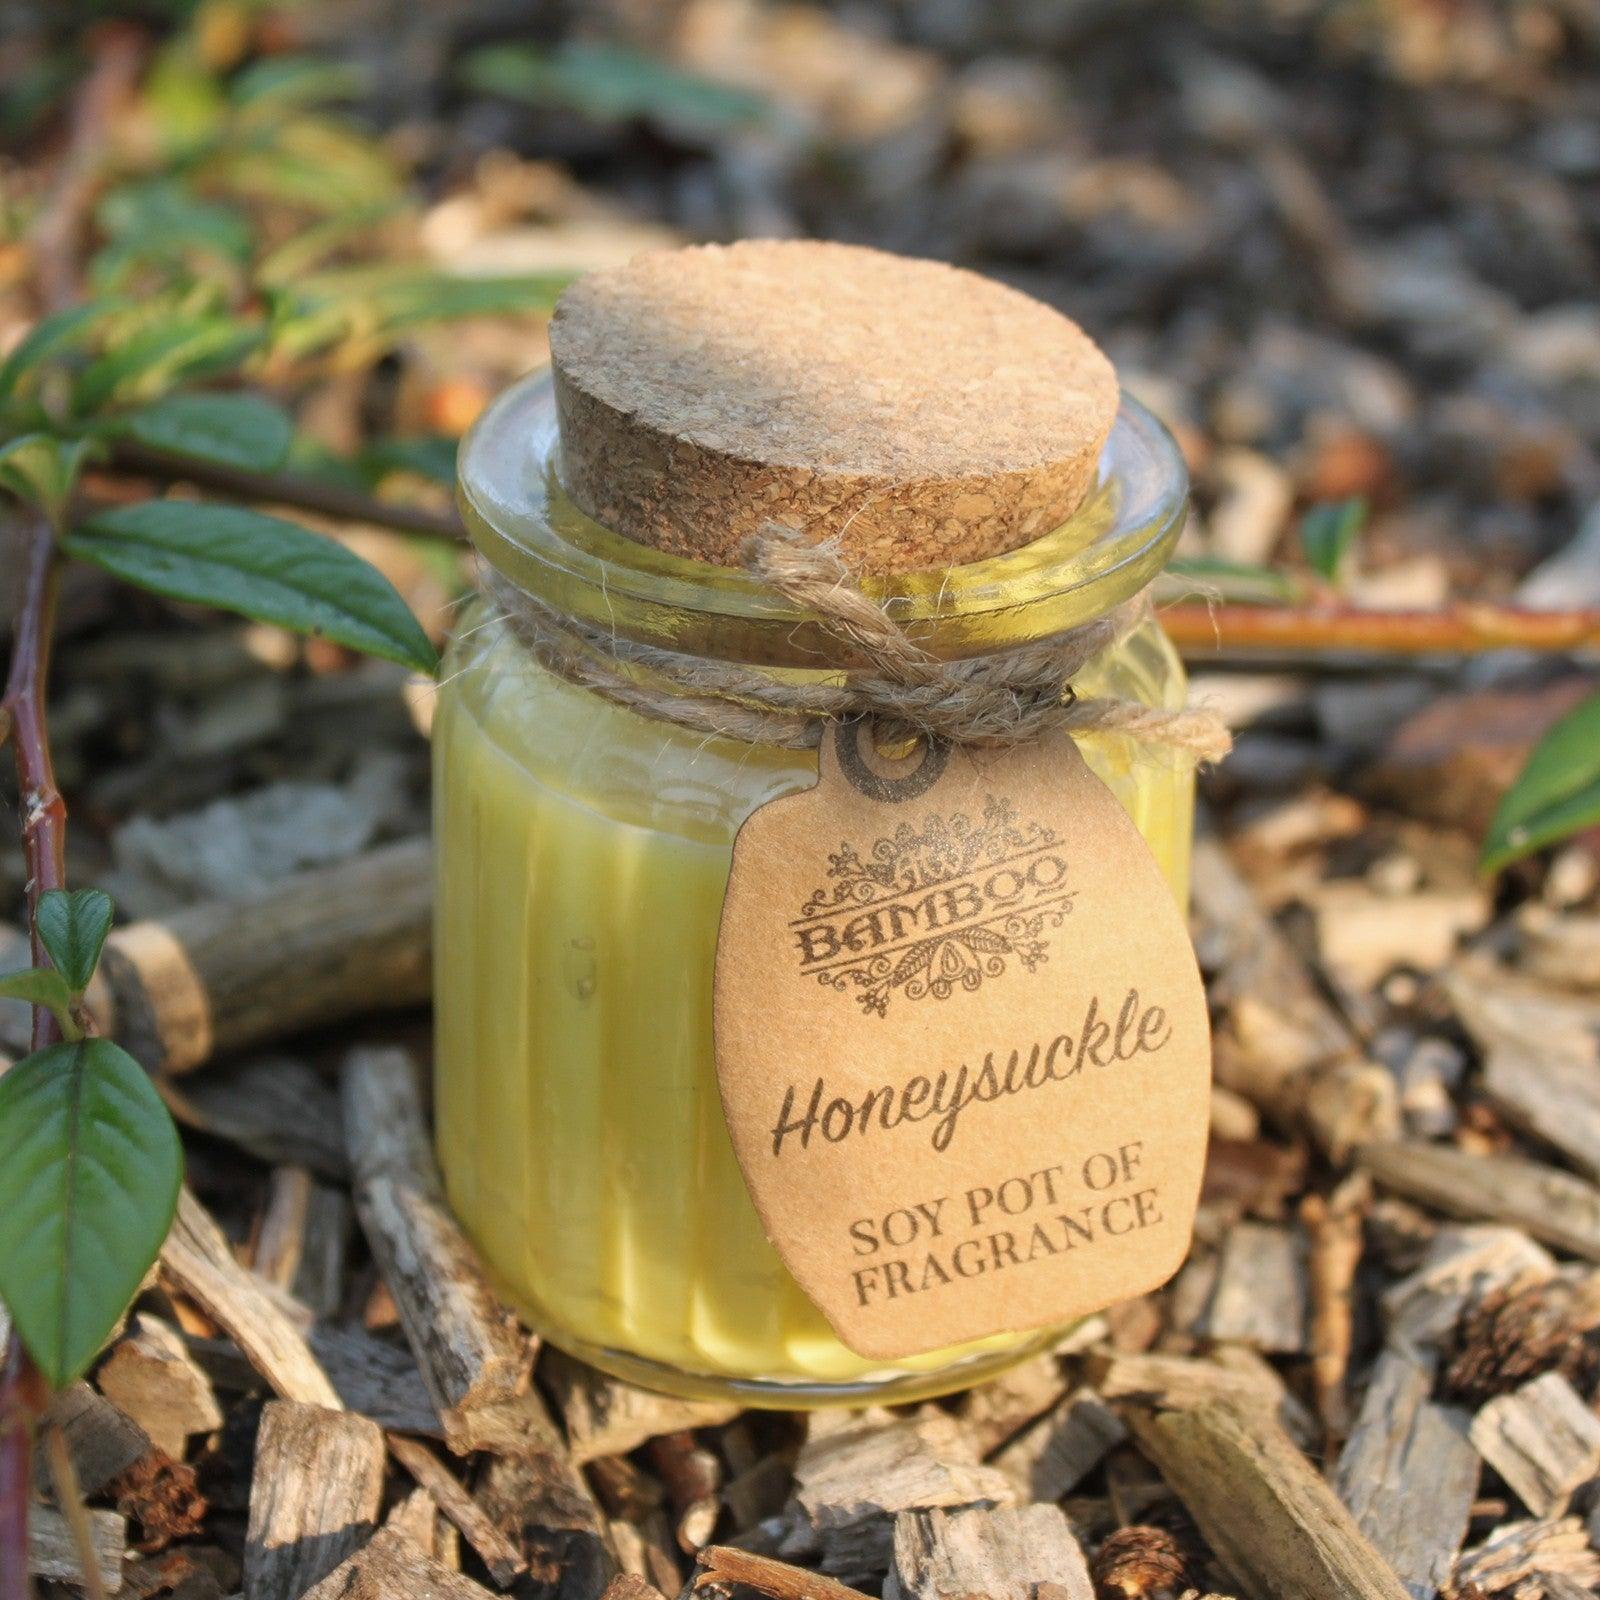 Honeysuckle Soy Pot of Fragrance Candles - DuvetDay.co.uk